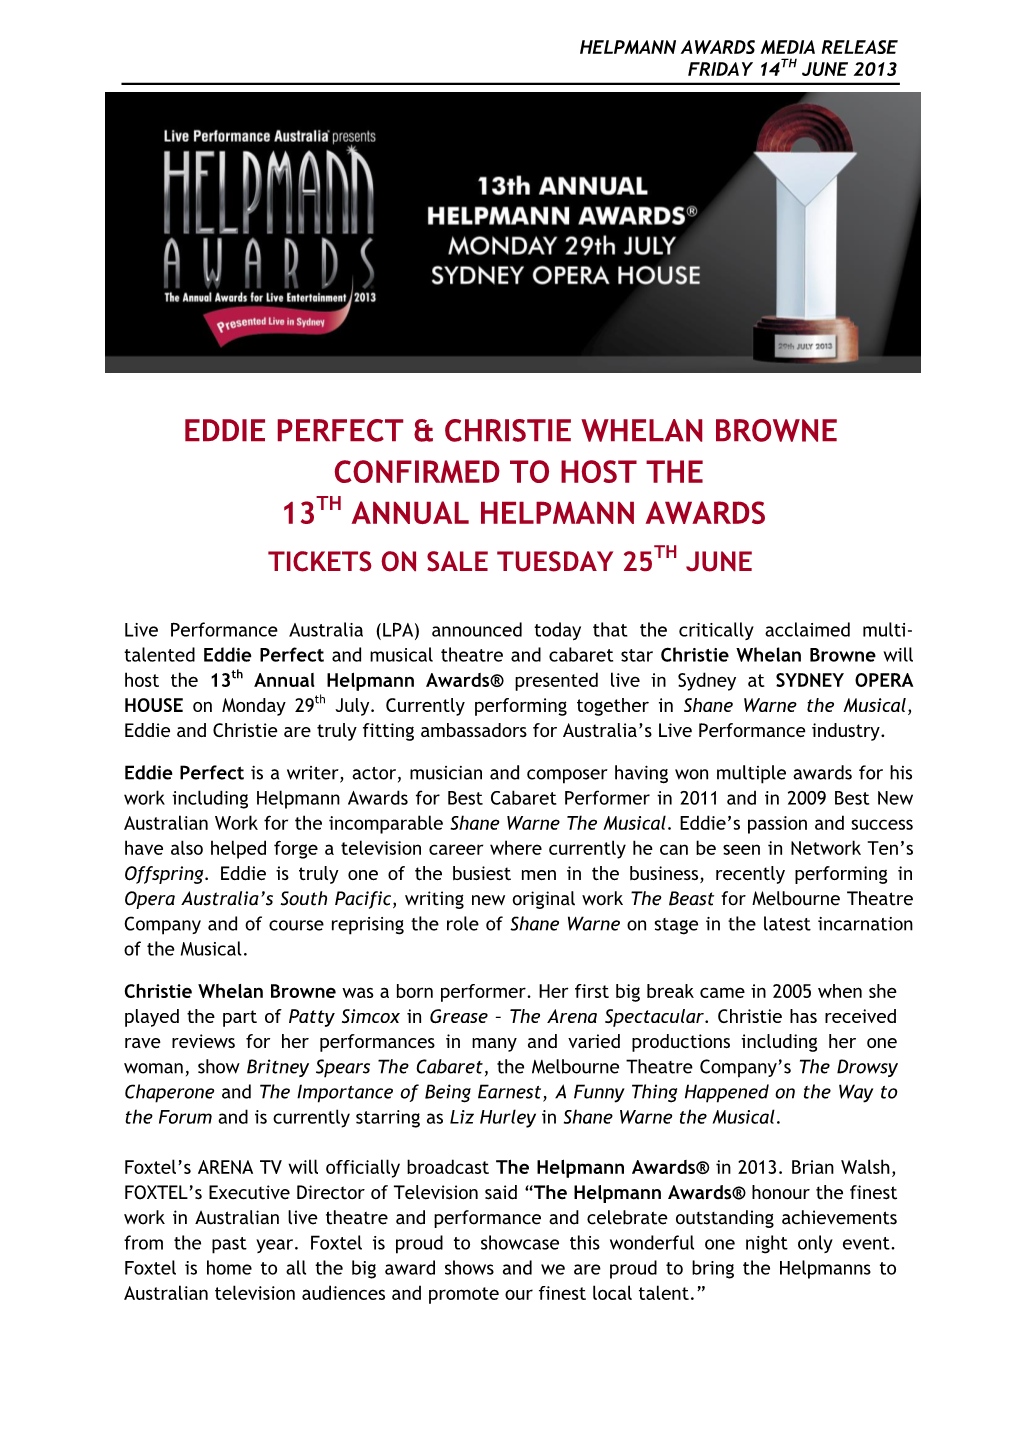 Eddie Perfect & Christie Whelan Browne Confirmed